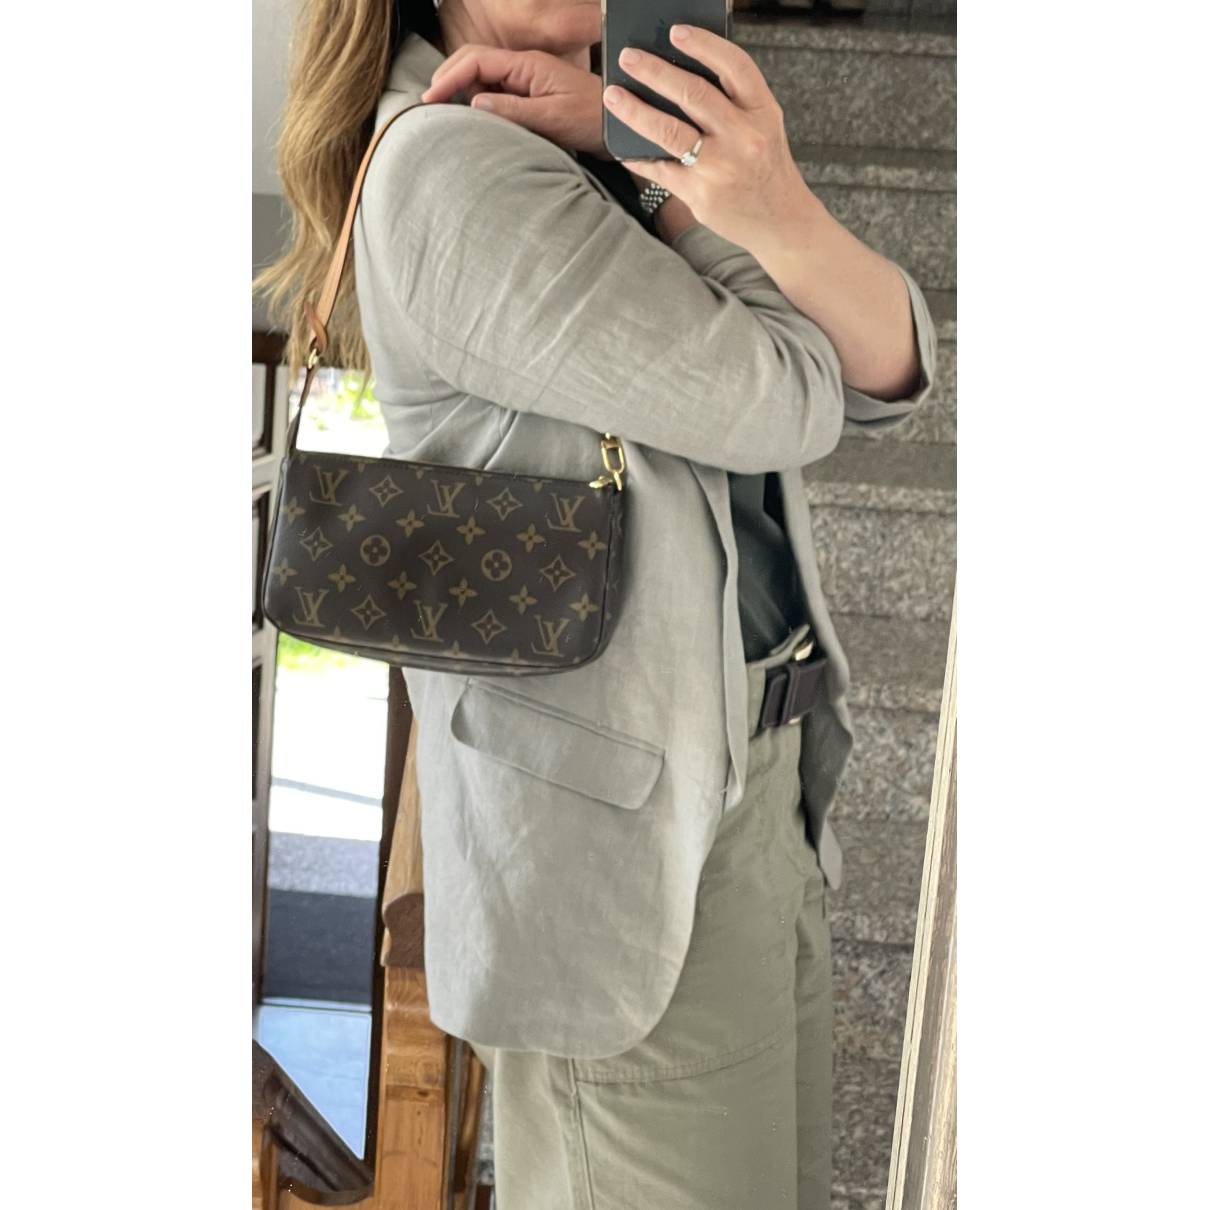 Pochette accessoire cloth handbag Louis Vuitton Brown in Cloth - 29839882